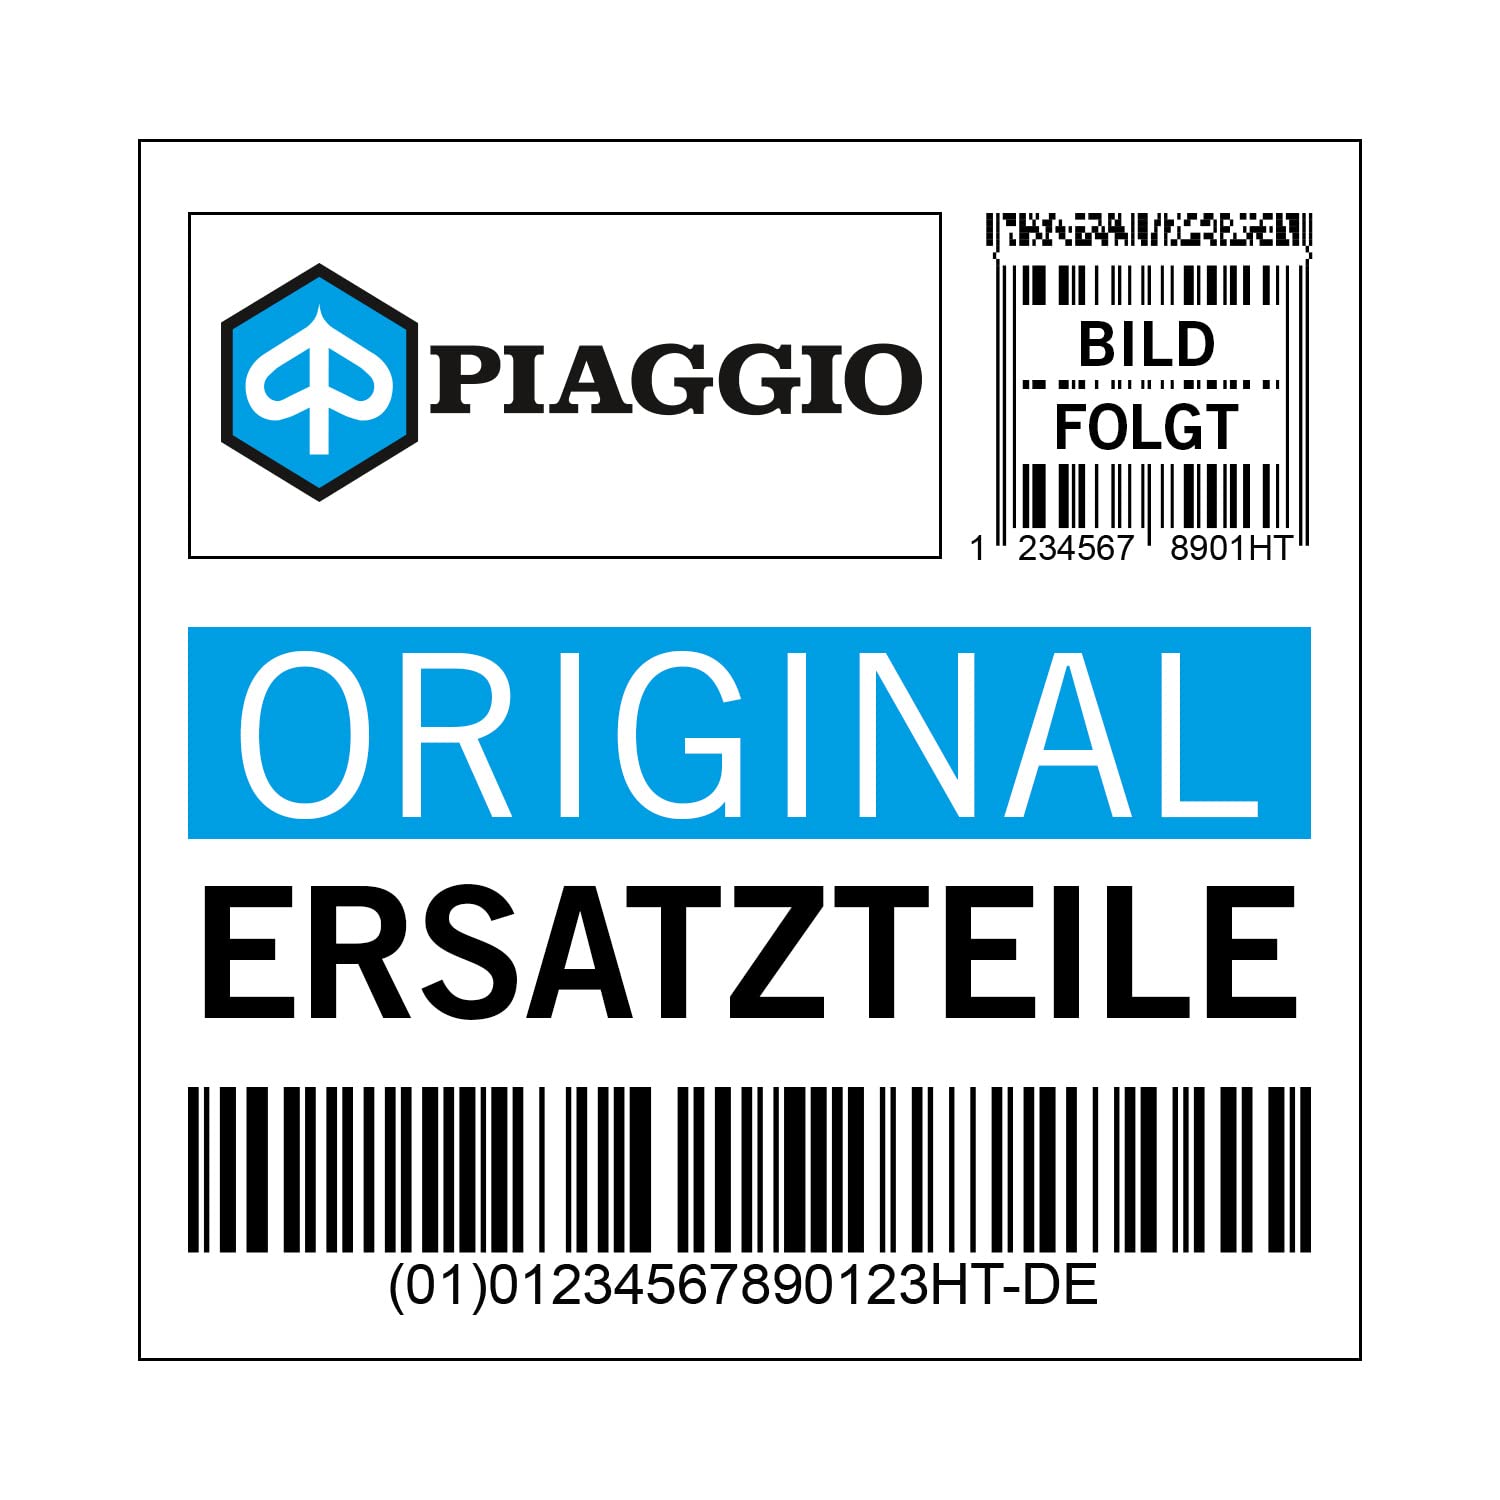 Kaskade Piaggio Verkleidung Horn, silber, HA silber/dolomiti / 770/B für Vespa GTS Bj. 2014, 1B000885000HA von Maxtuned